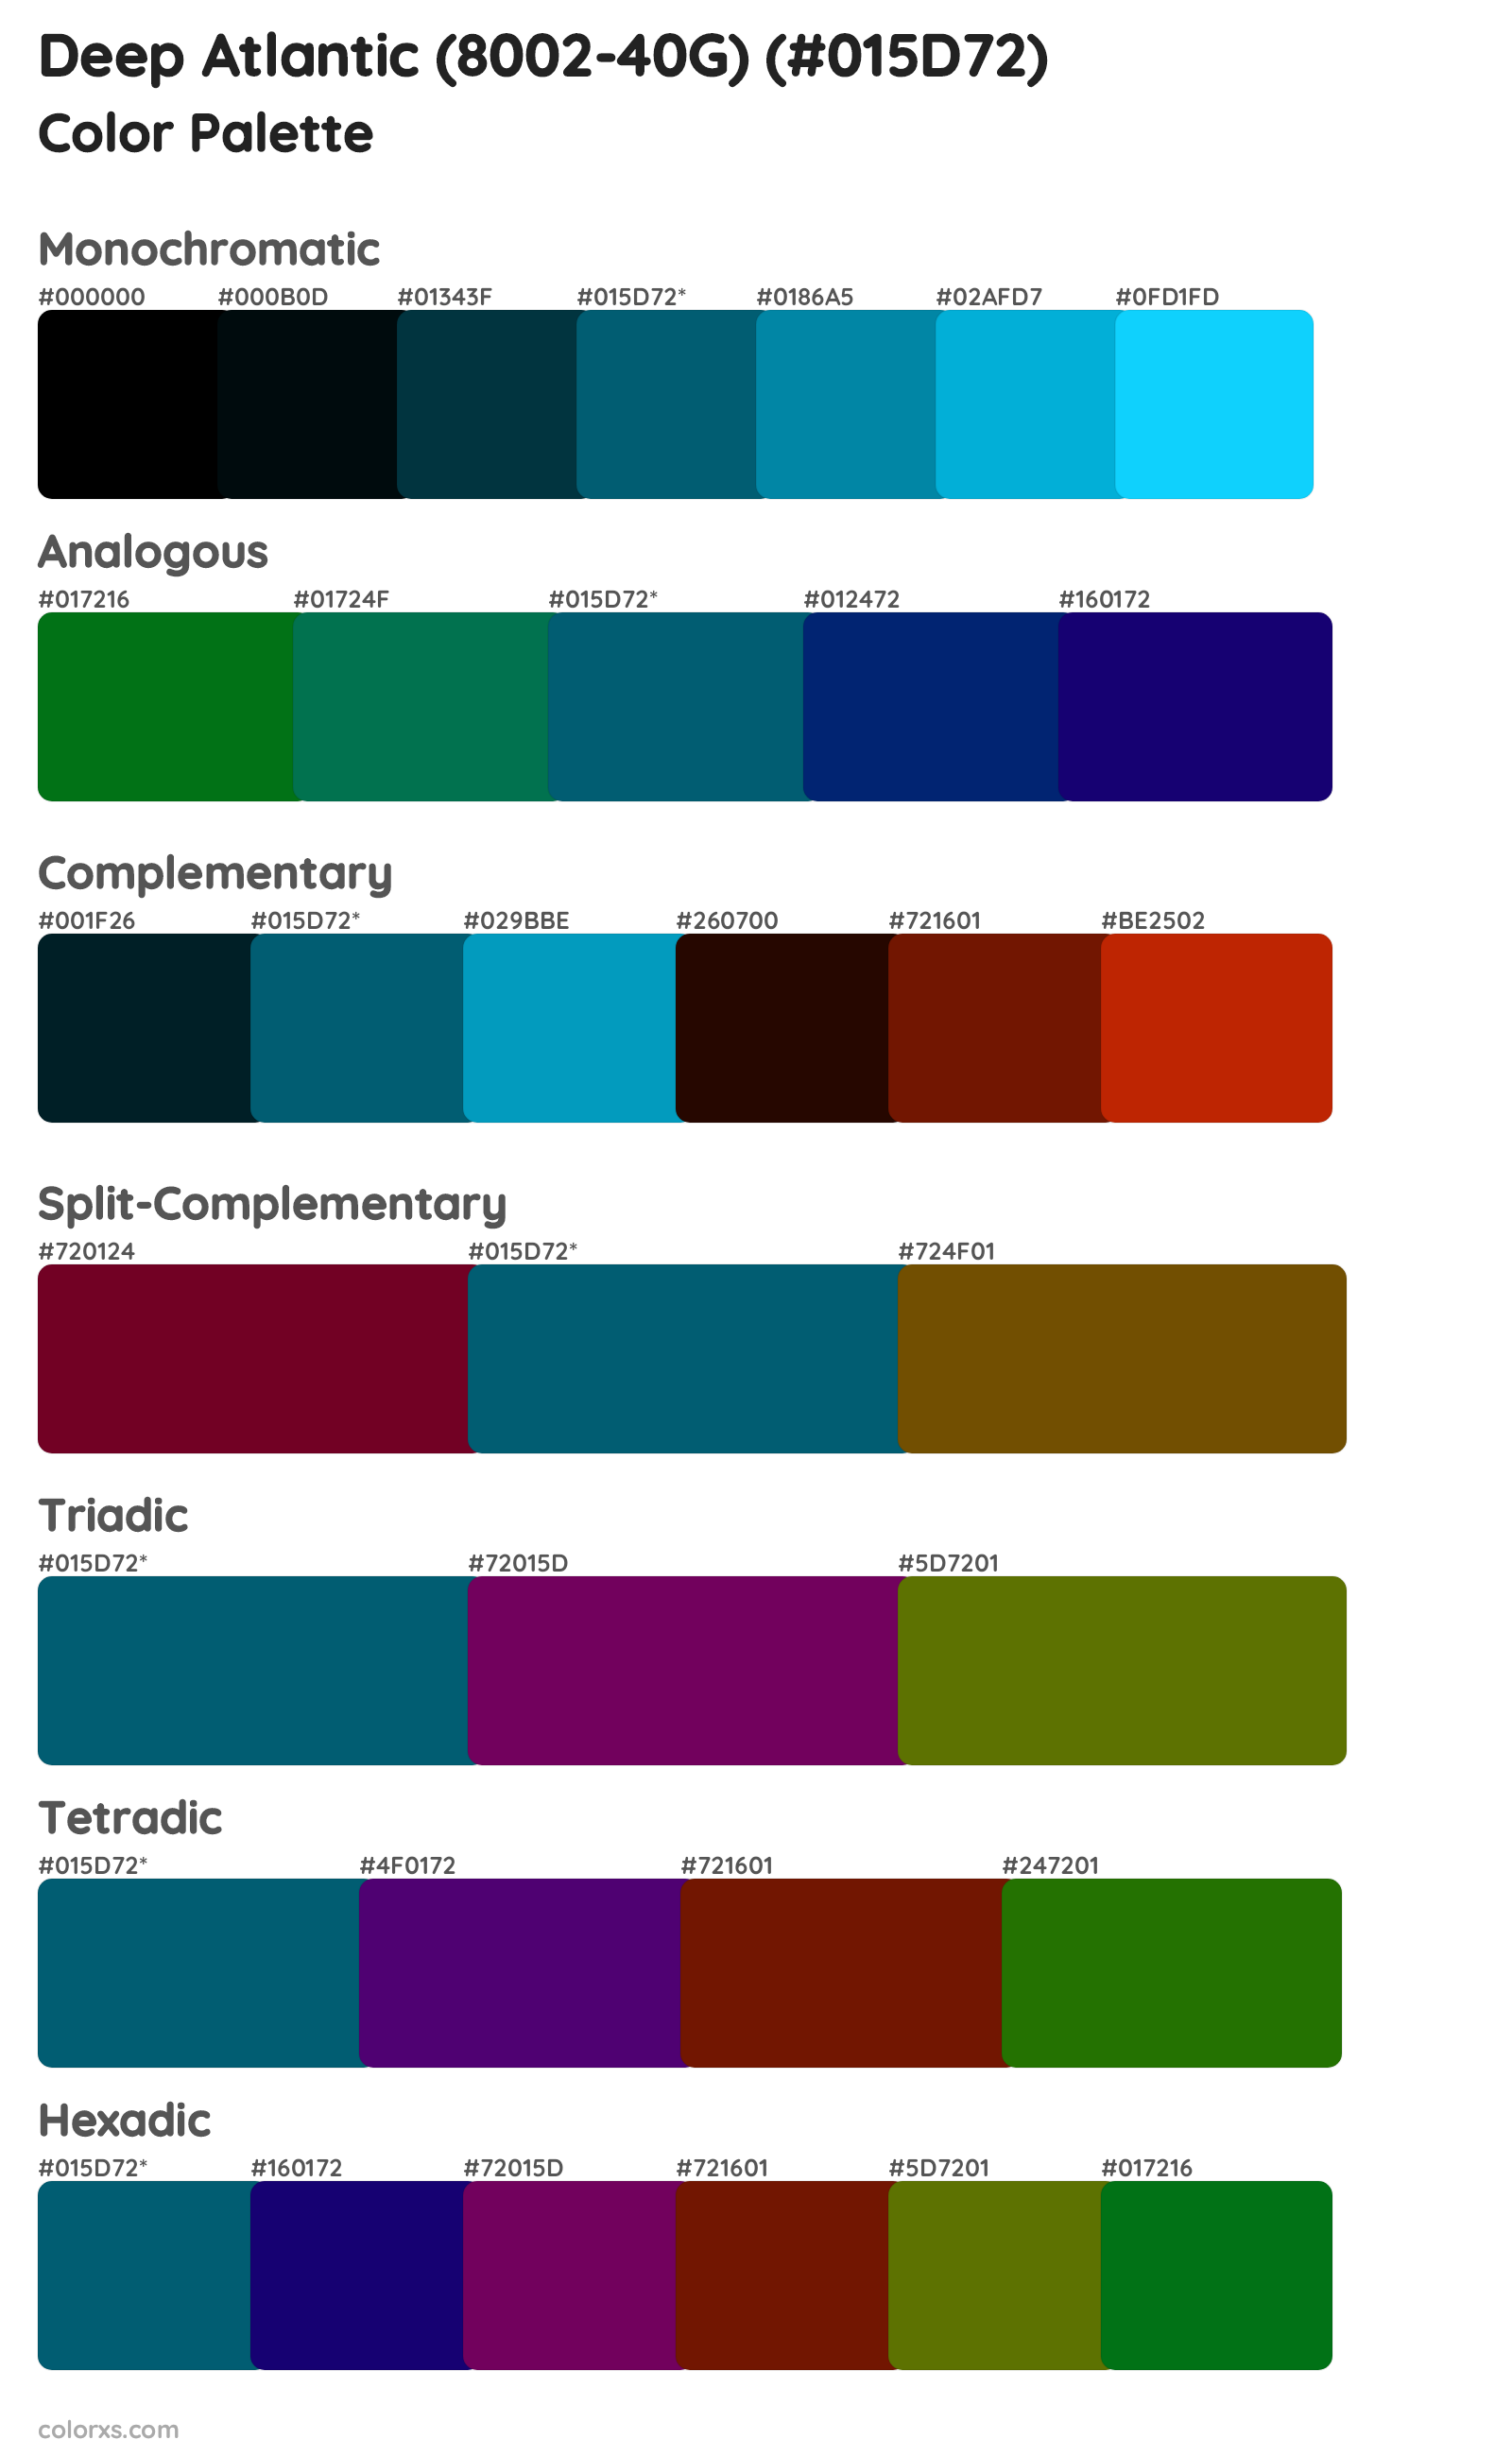 Deep Atlantic (8002-40G) Color Scheme Palettes